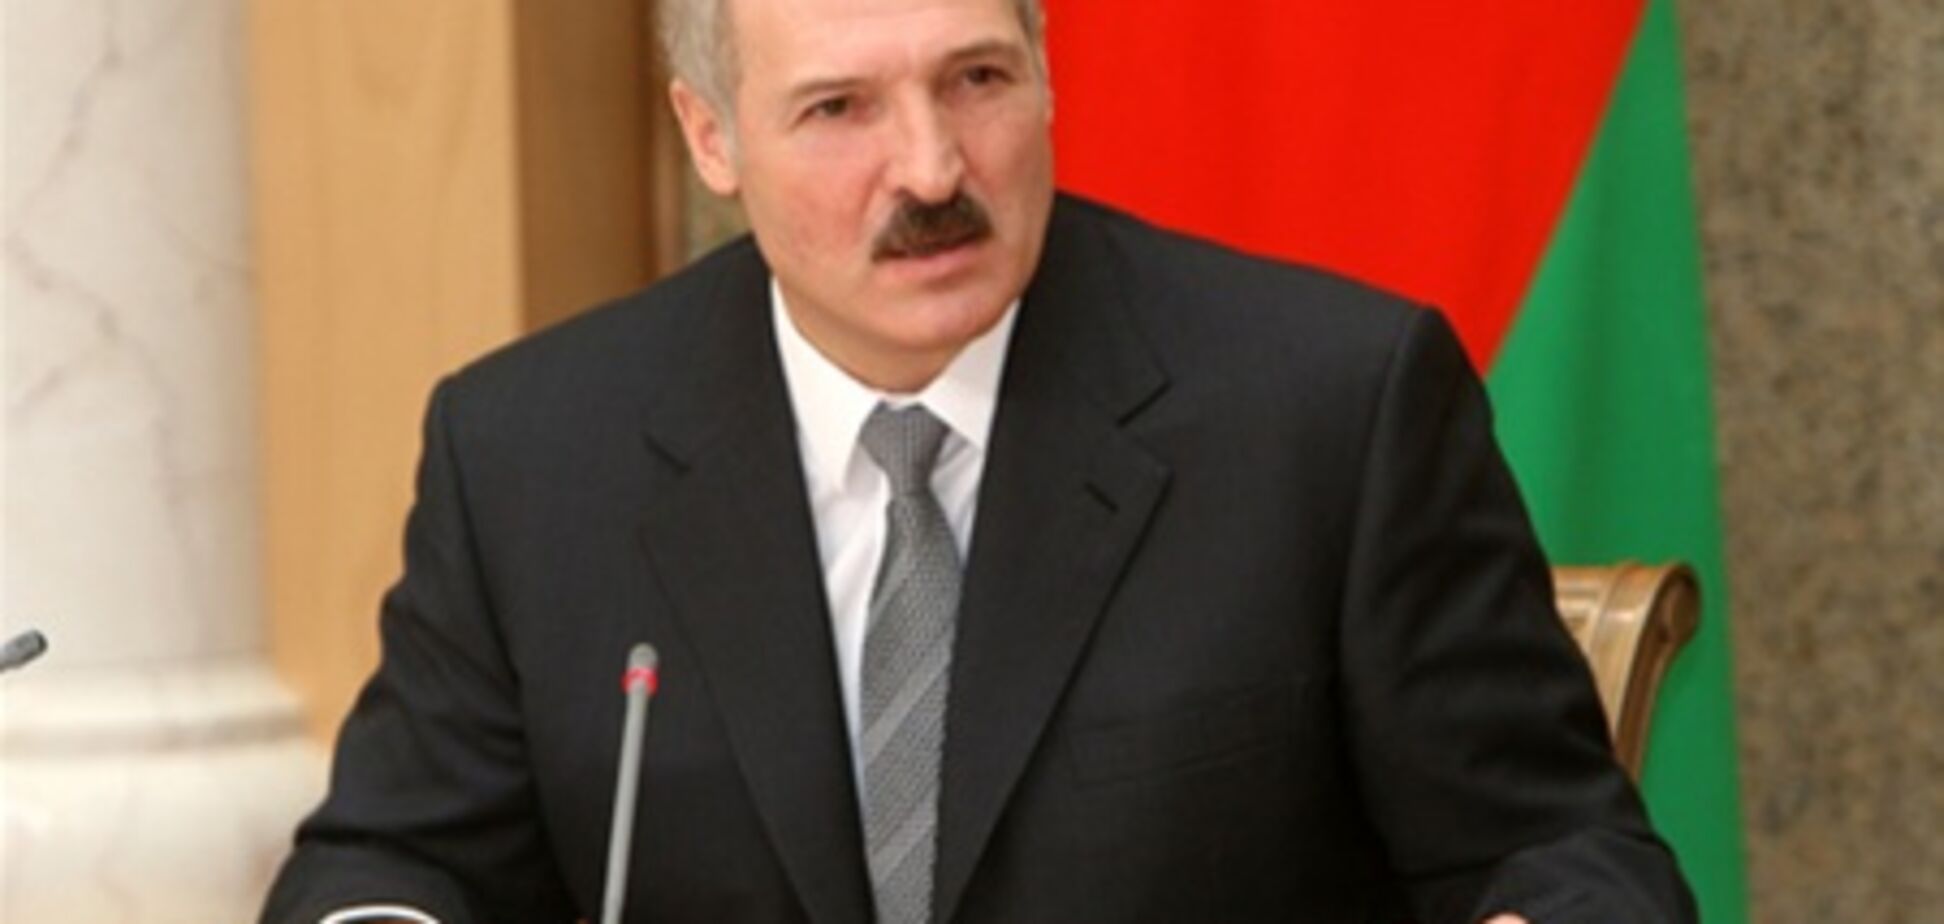 Эксперимент 'Беларусь' закончится крахом